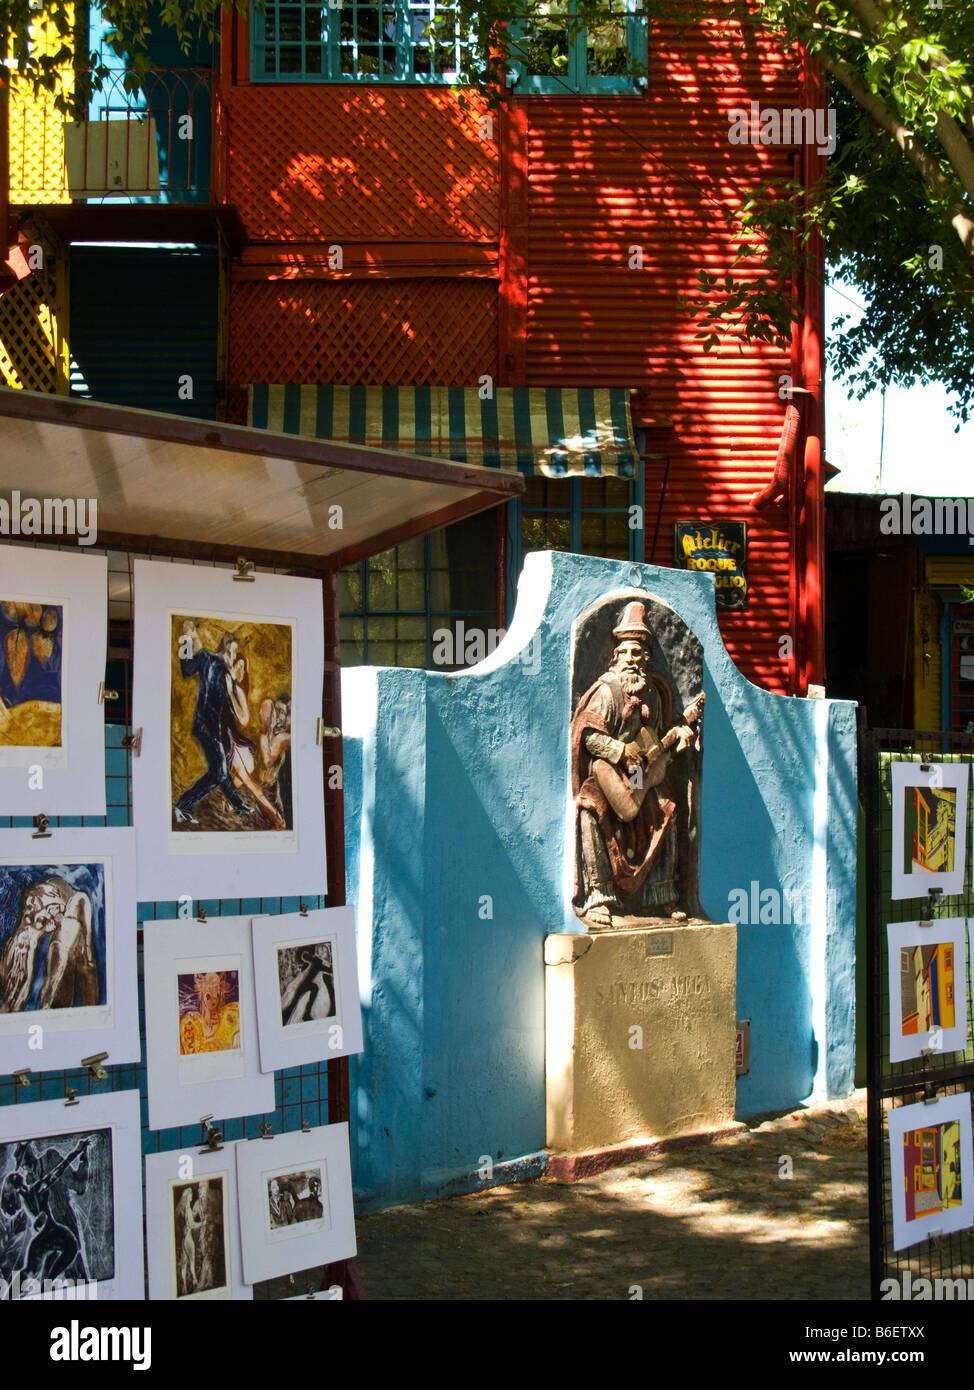 Imágenes para la venta y una estatua en el barrio de La Boca, Buenos Aires, Argentina Foto de stock